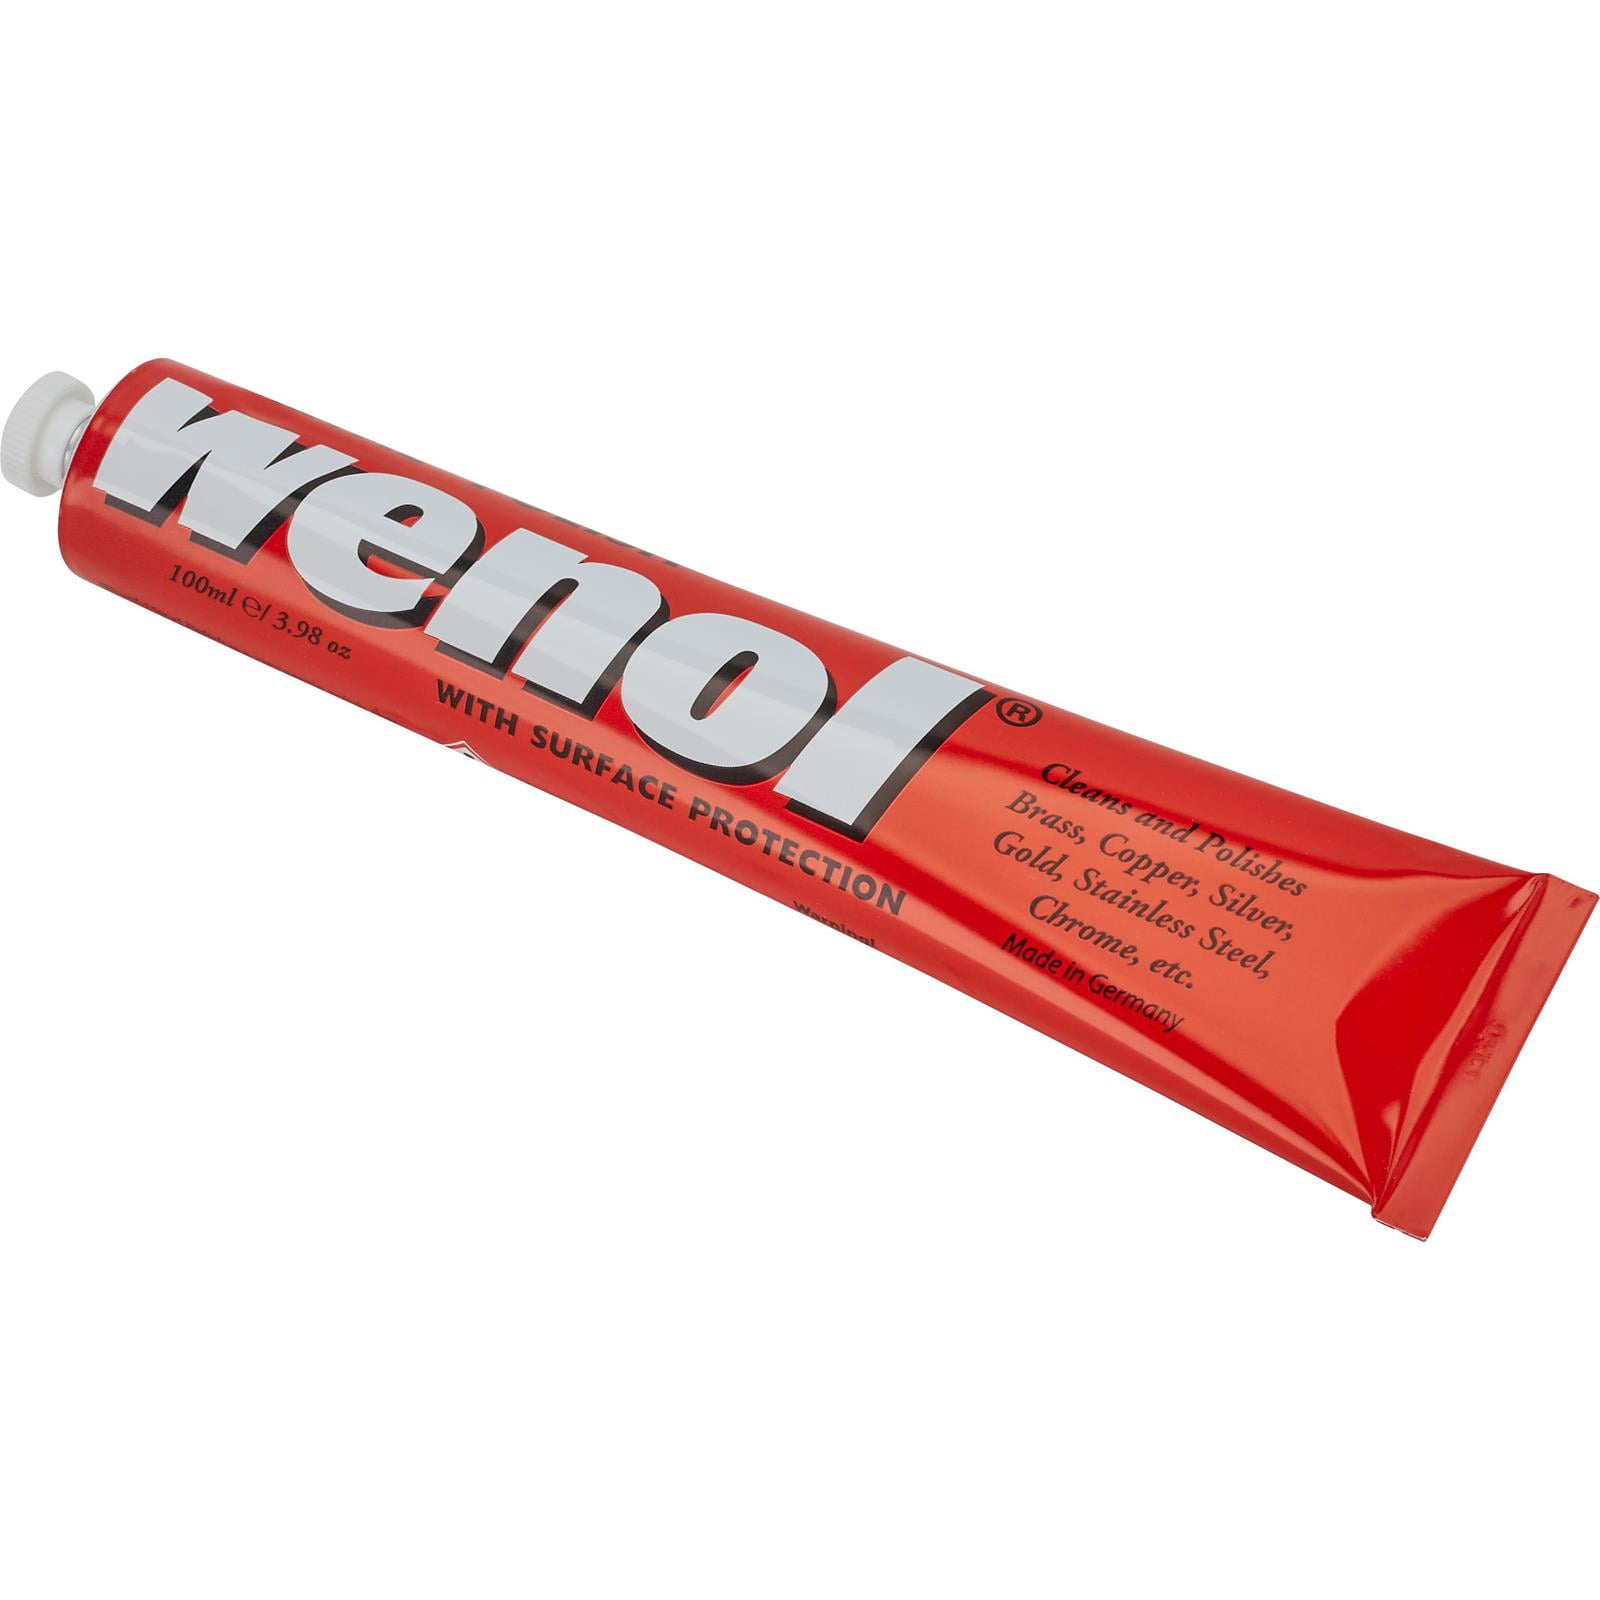 Wenol Metal Polish Distributor